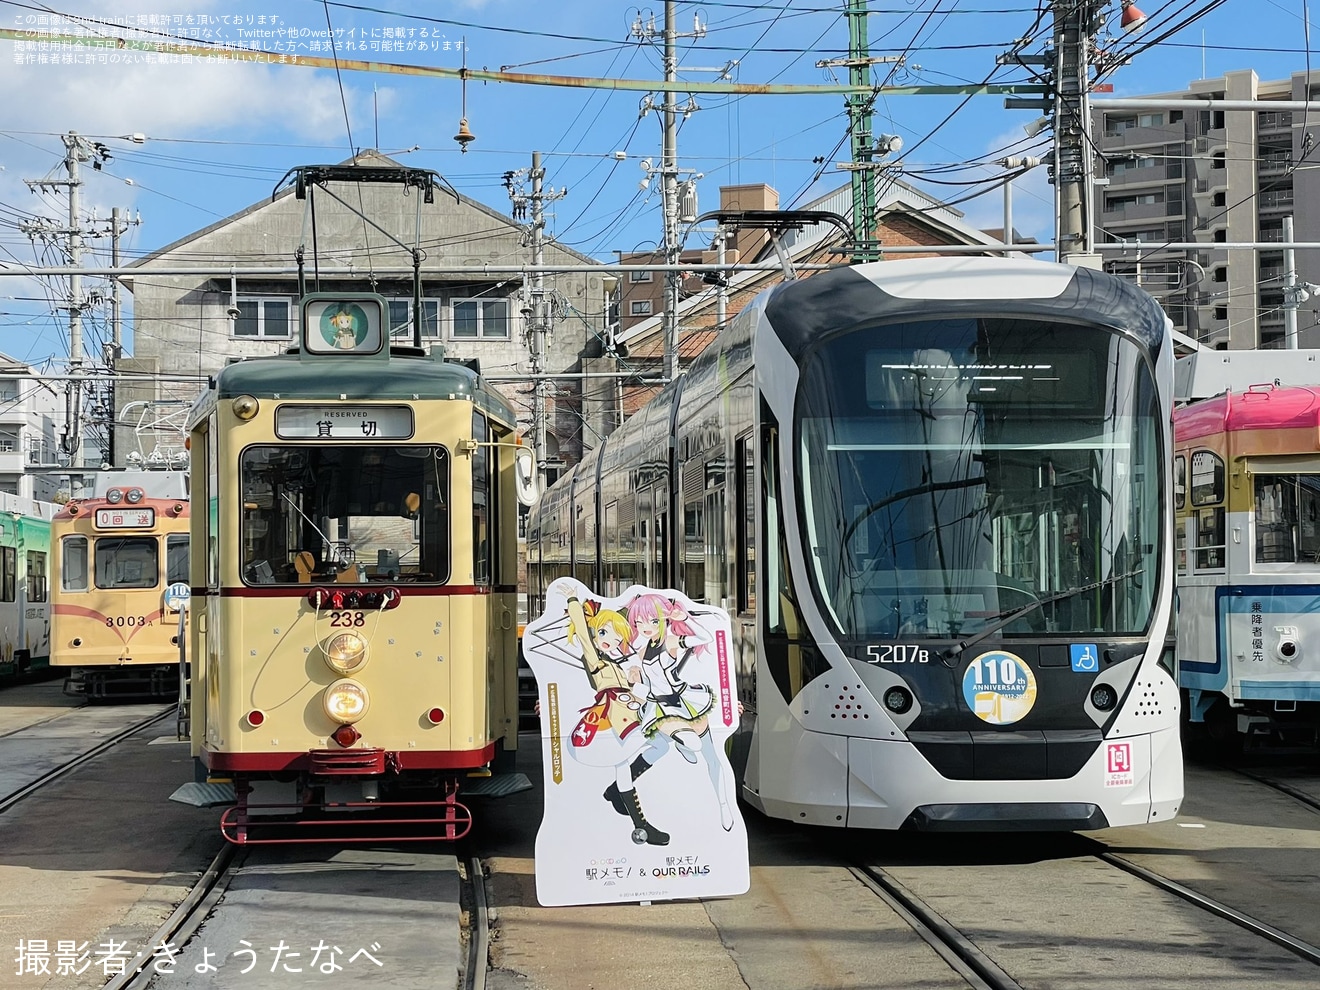 【広電】「駅メモアワメモ」コラボ「ミステリー電車運行」ツアーを催行の拡大写真